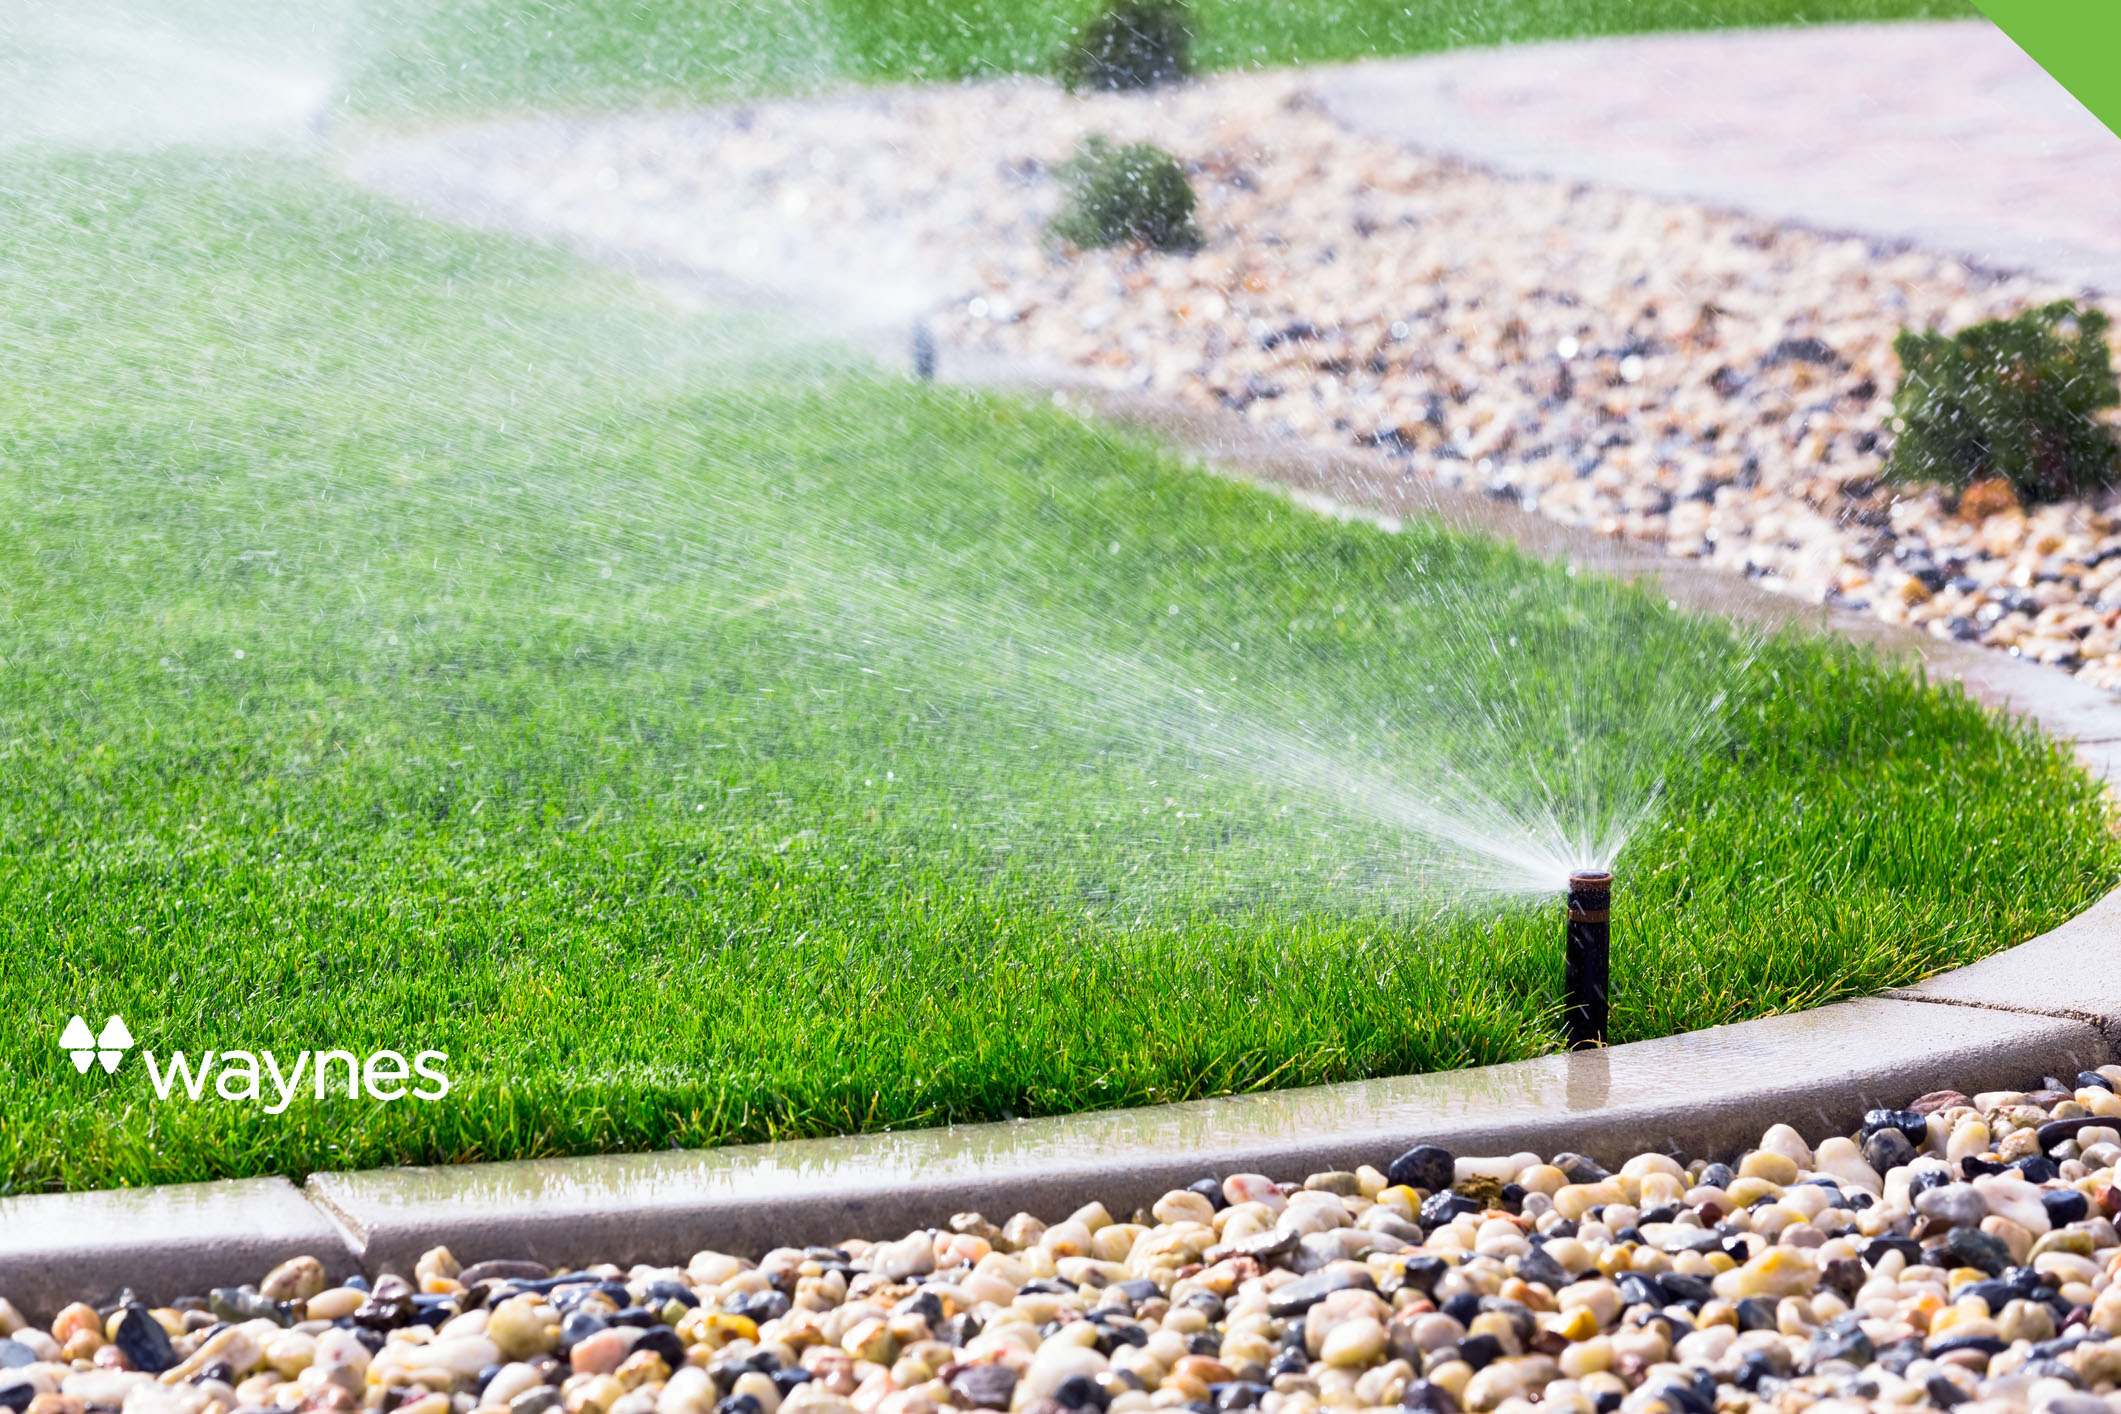 sprinklers watering a healthy lawn